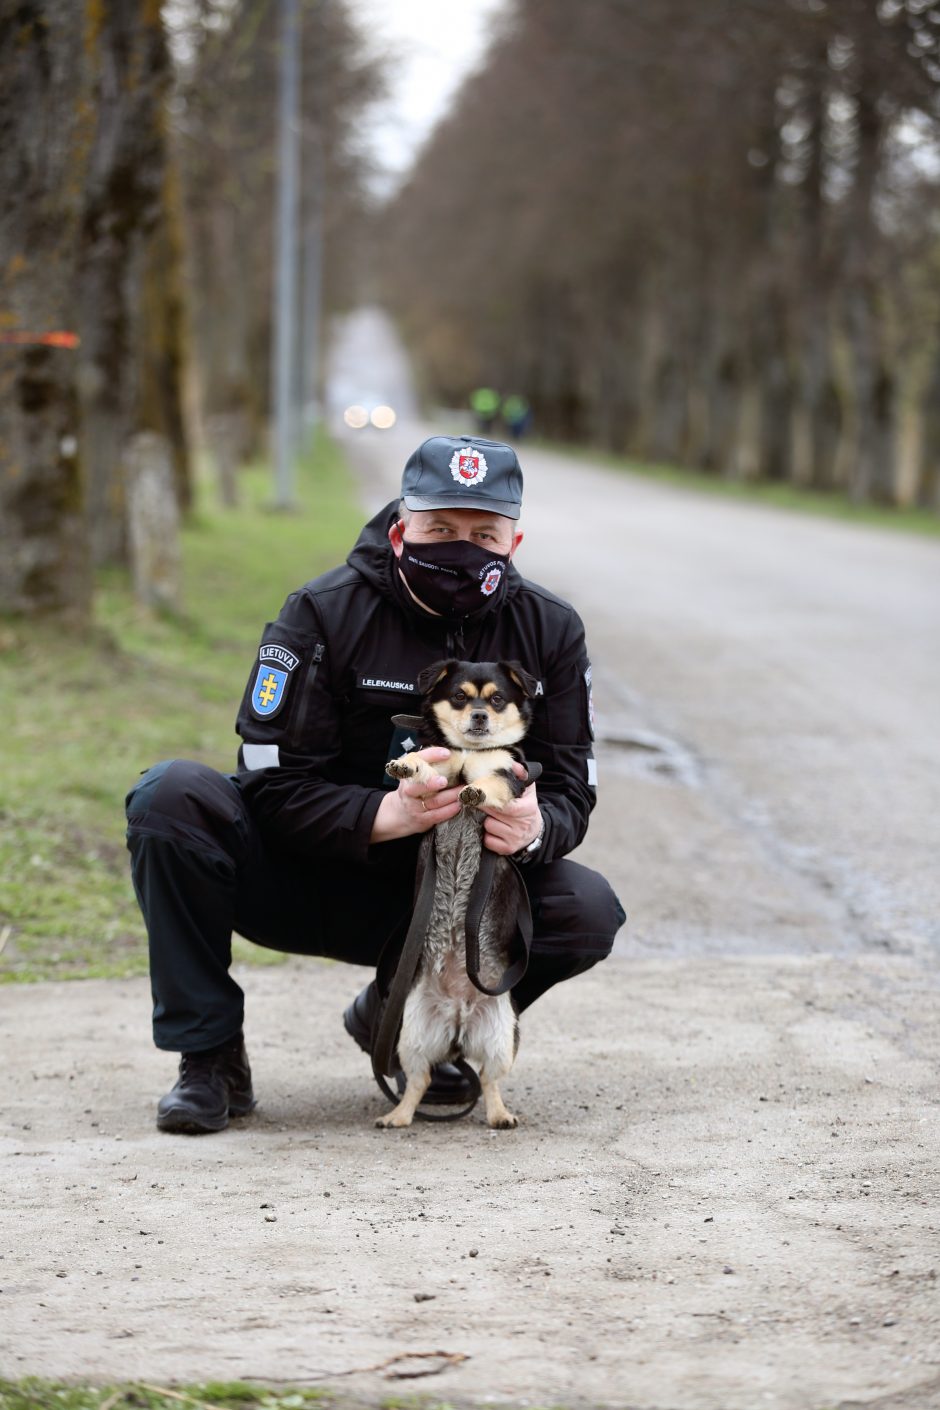 Kauno apskrities policijoje – jau penkti metai graži balandžio 24-osios tradicija